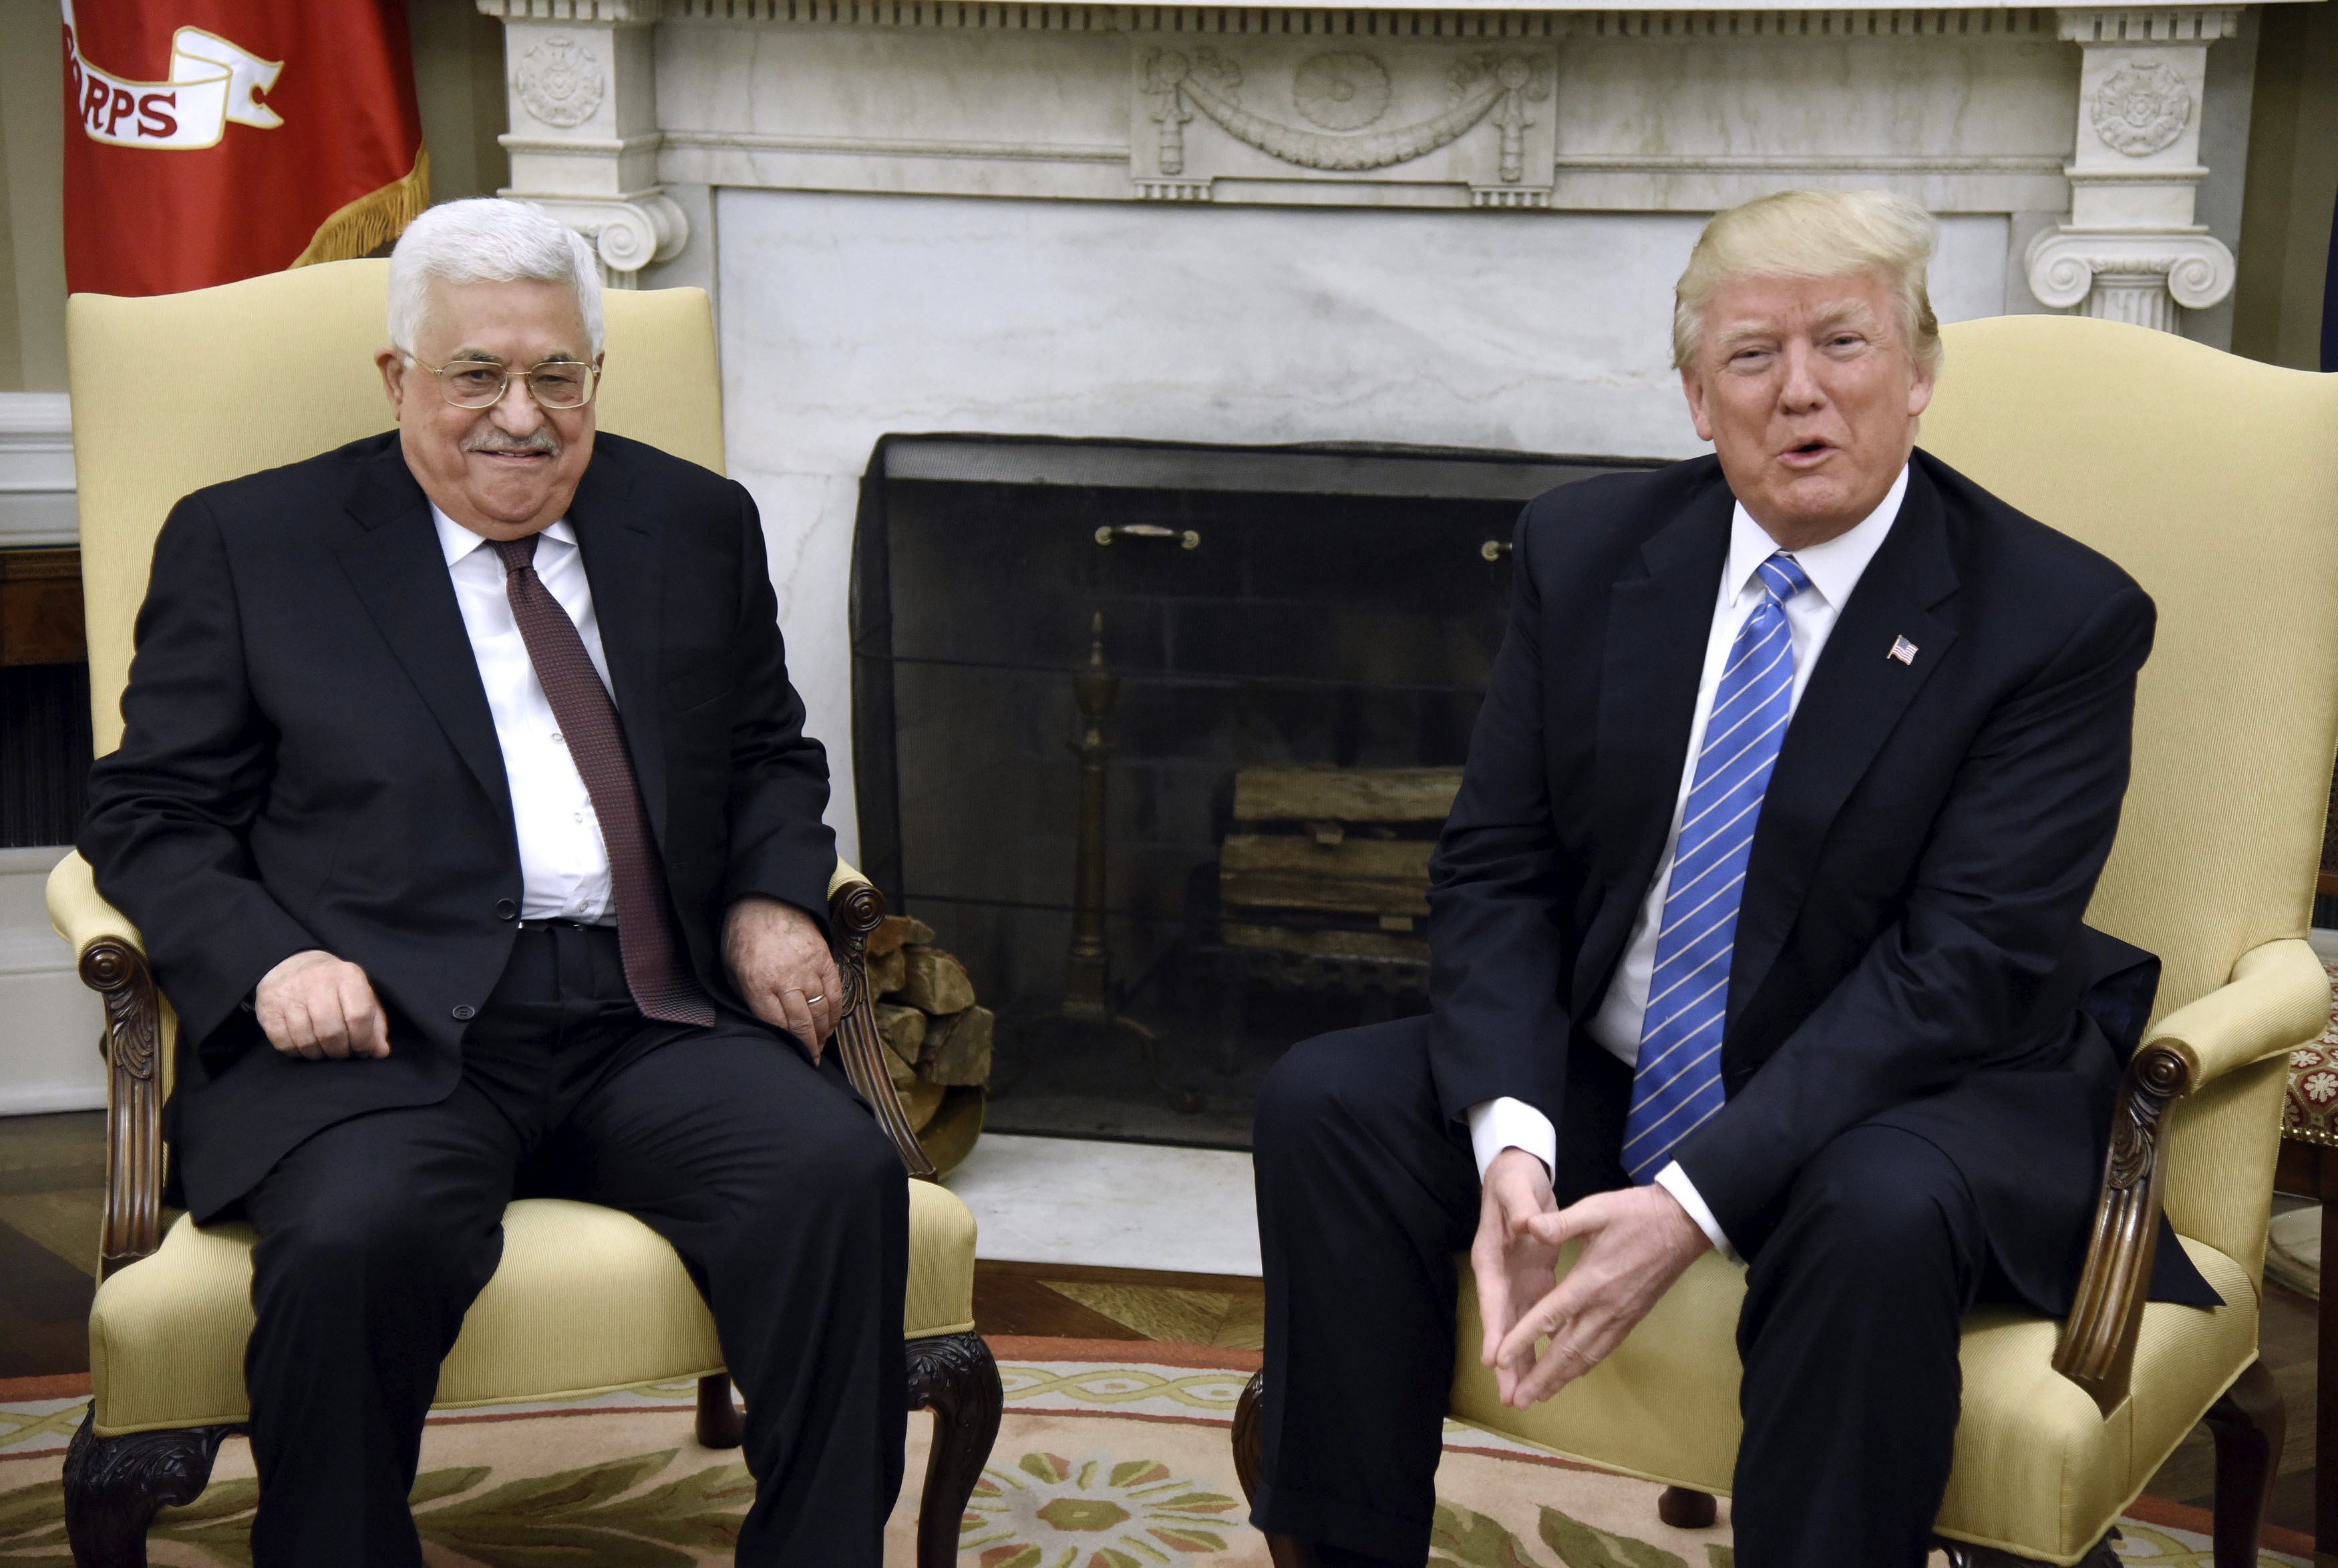 El embajador palestino en Estados Unidos, Husam Zomlot, aseguró que la decisión de Trump le da una oportunidad a la paz.